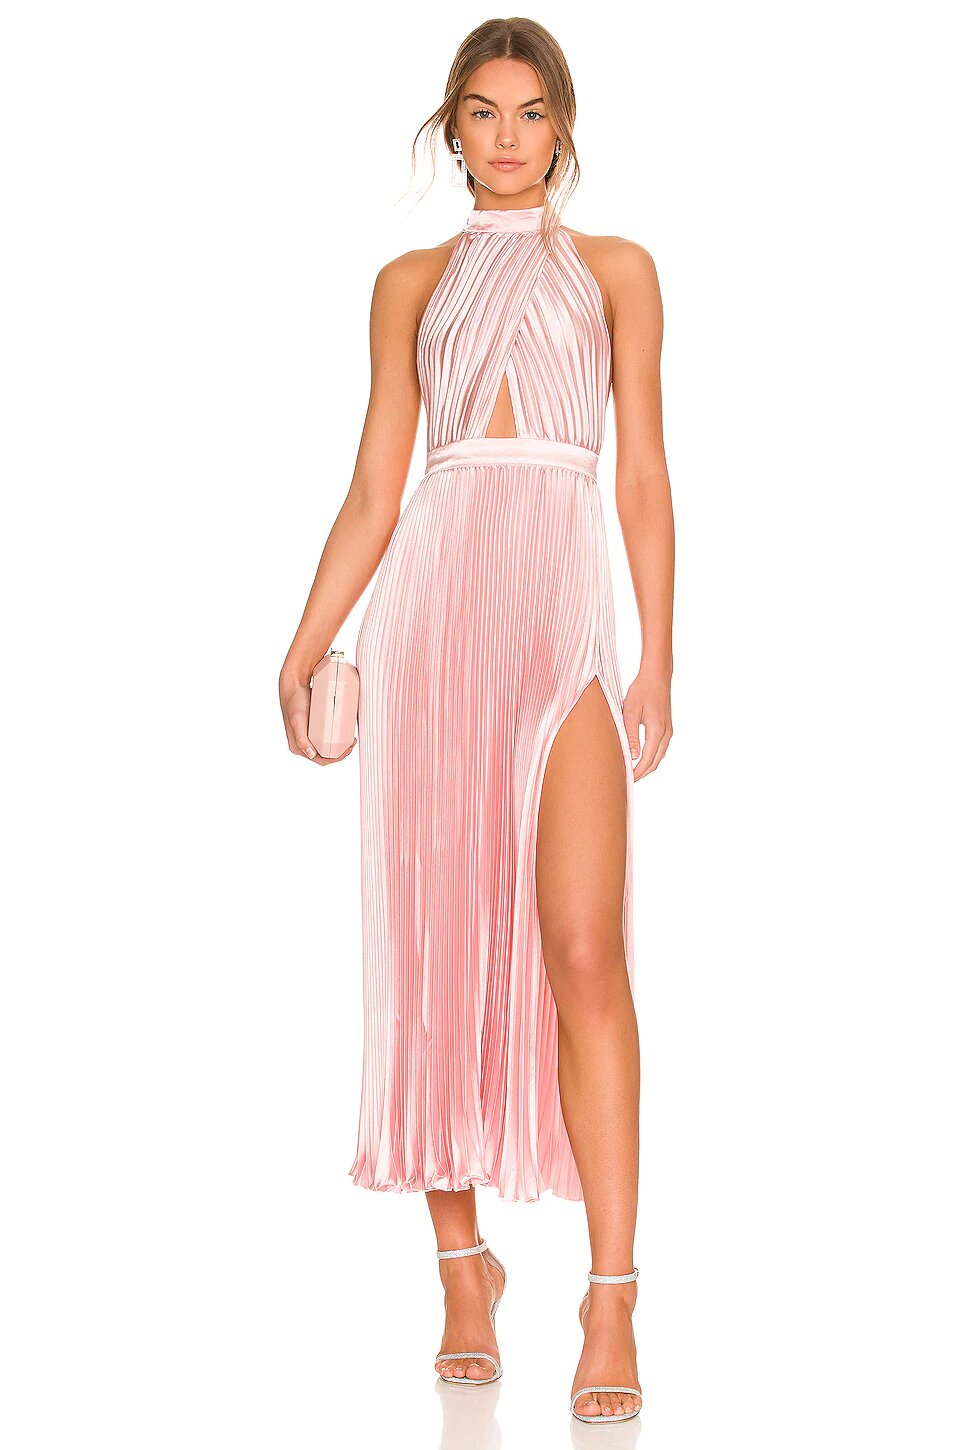 L'idee - Renaissance Split Midi Dress - Light Pink